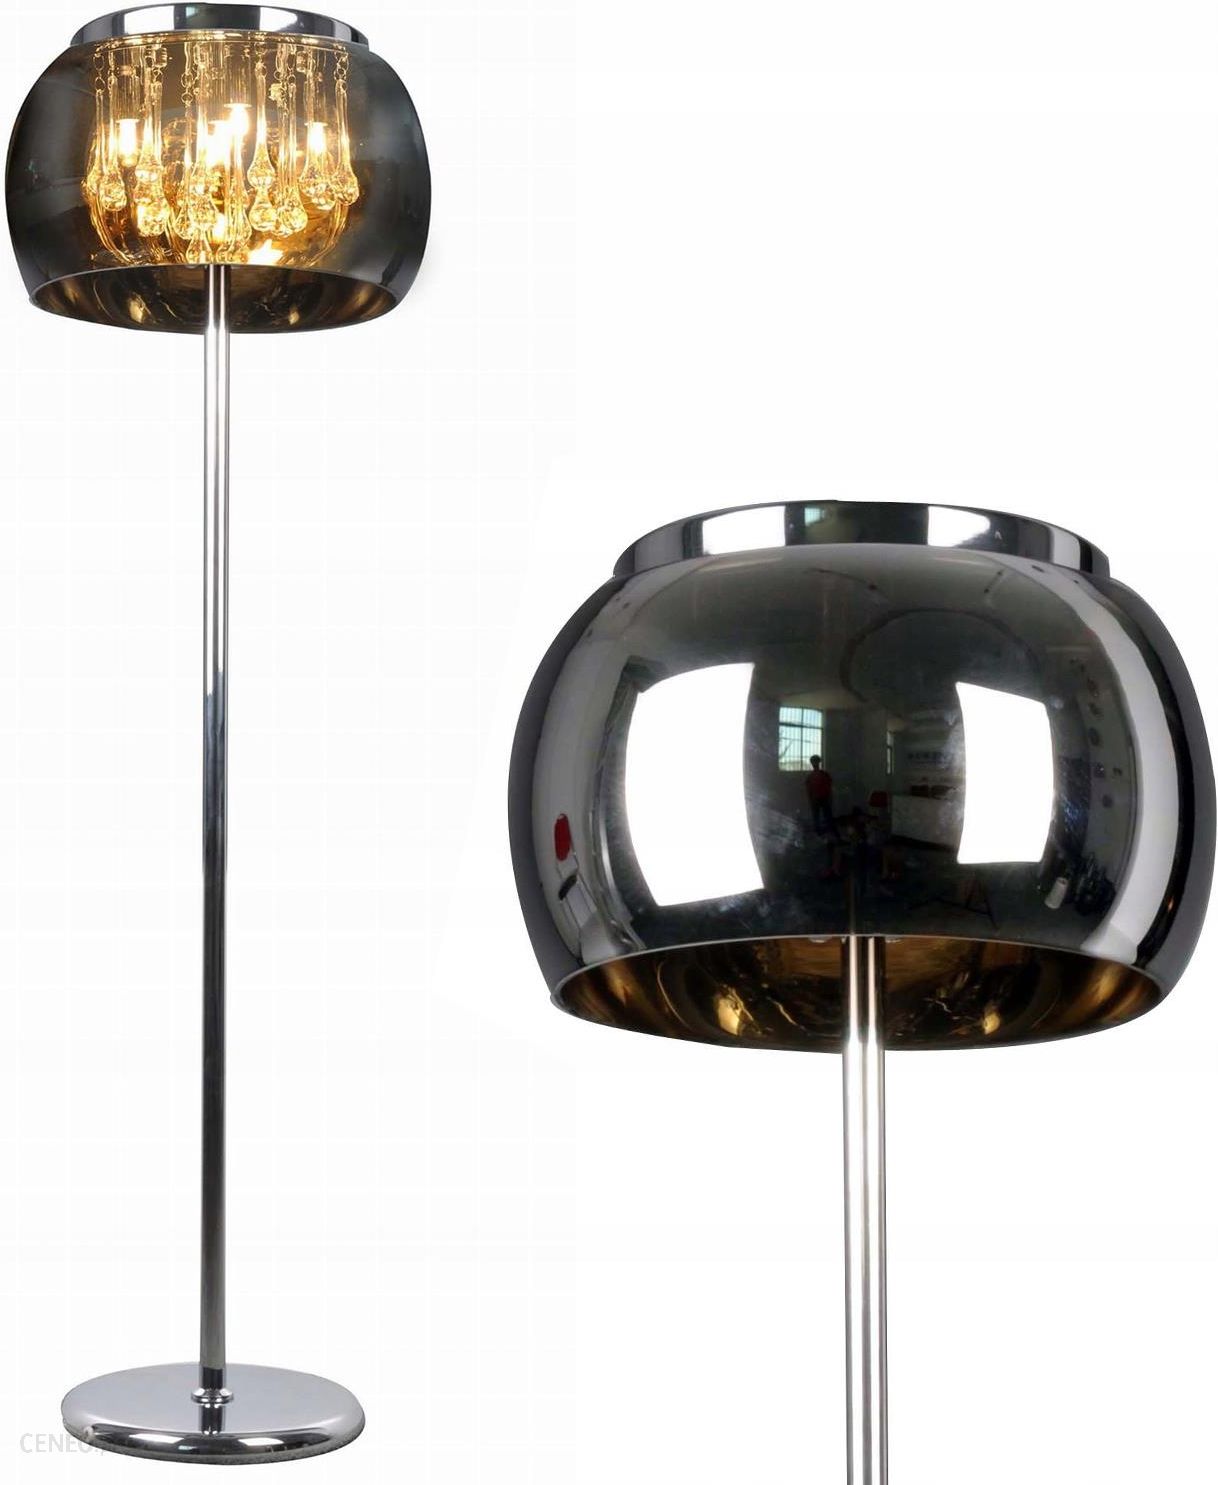 Lampa Lampa Podlogowa Romeo 5x4w G9 Opinie I Atrakcyjne Ceny Na Ceneo Pl